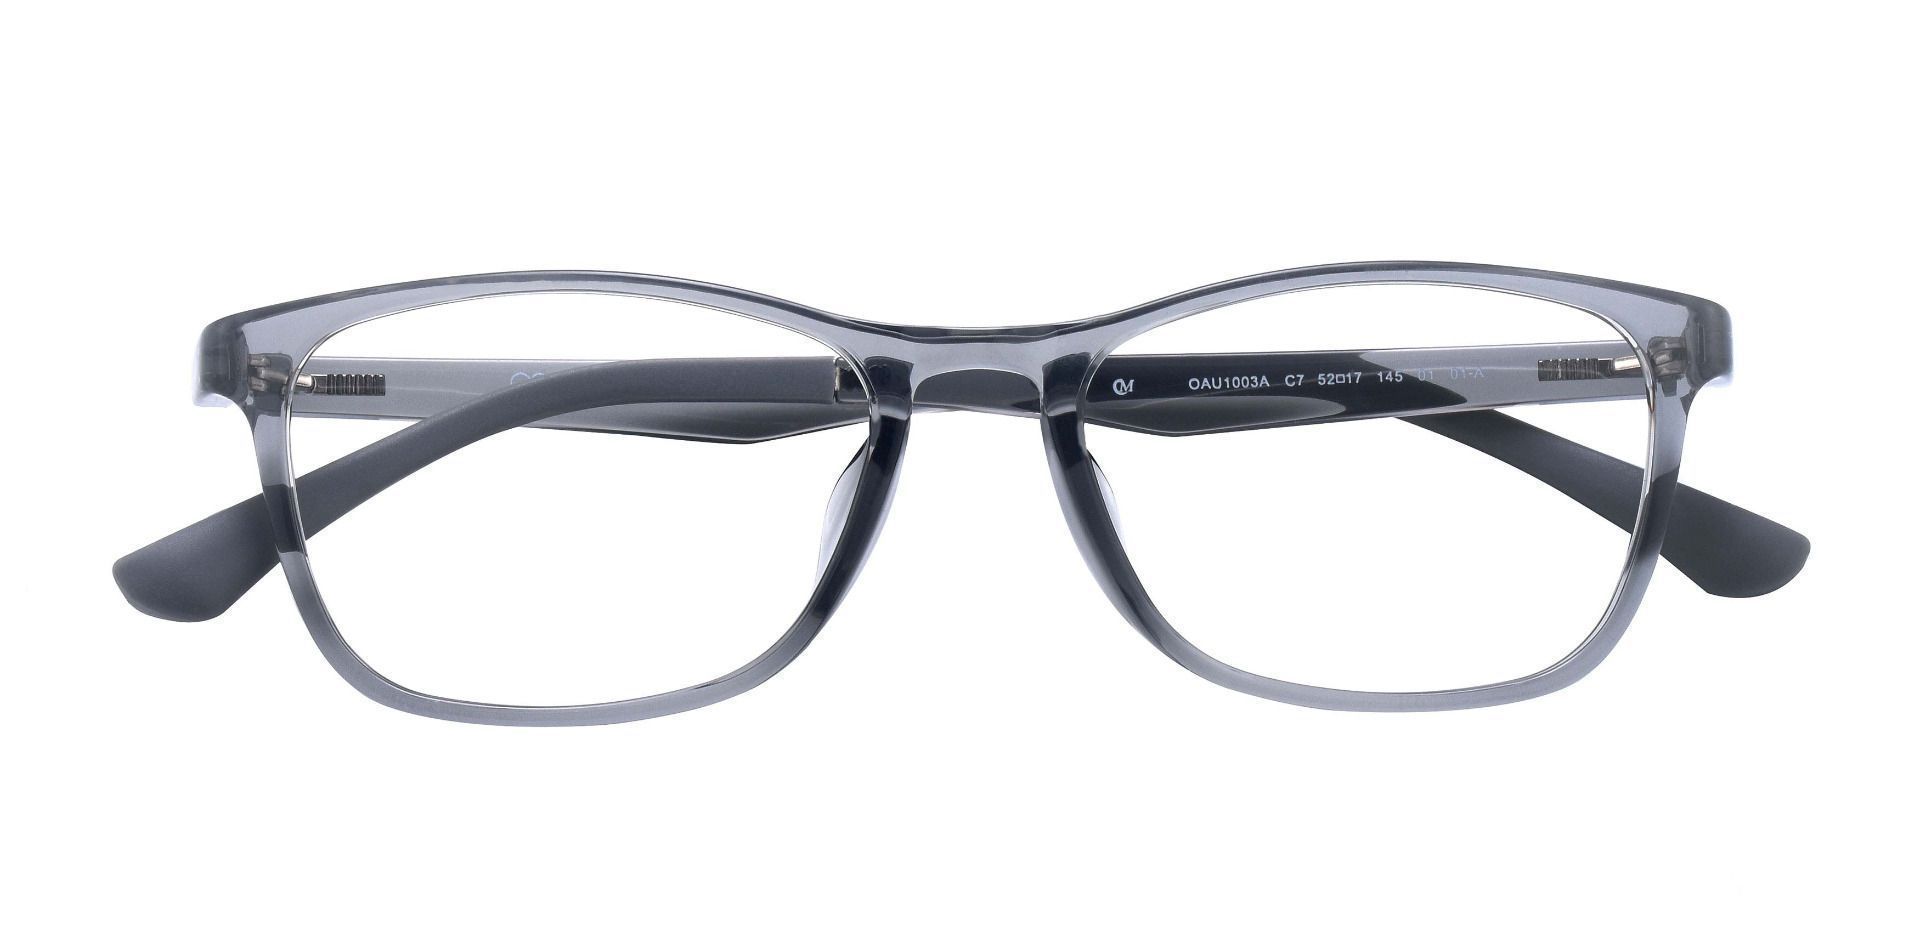 Merritt Rectangle Reading Glasses - Gray